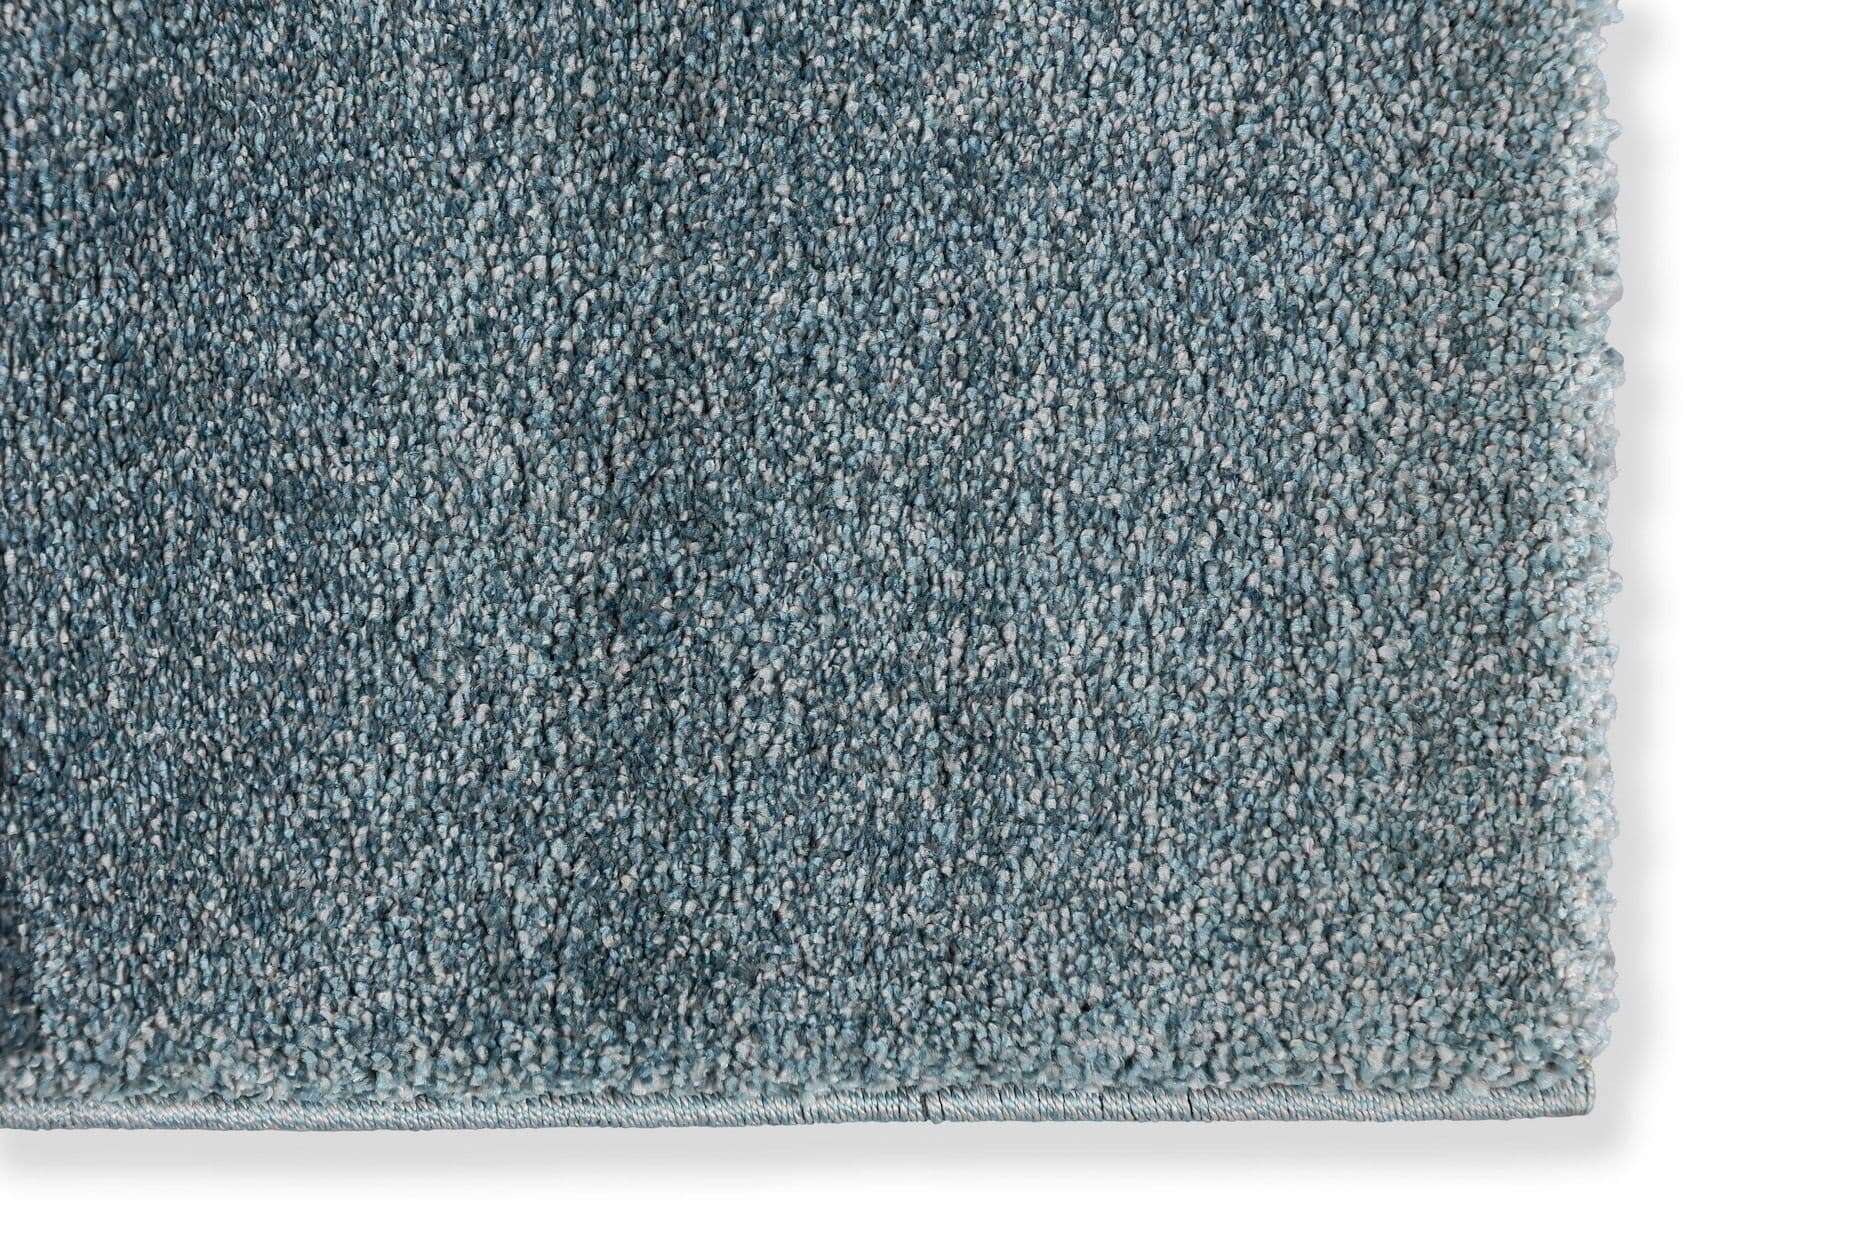  Teppich Pure 6307-190-024 im Wunschmaß